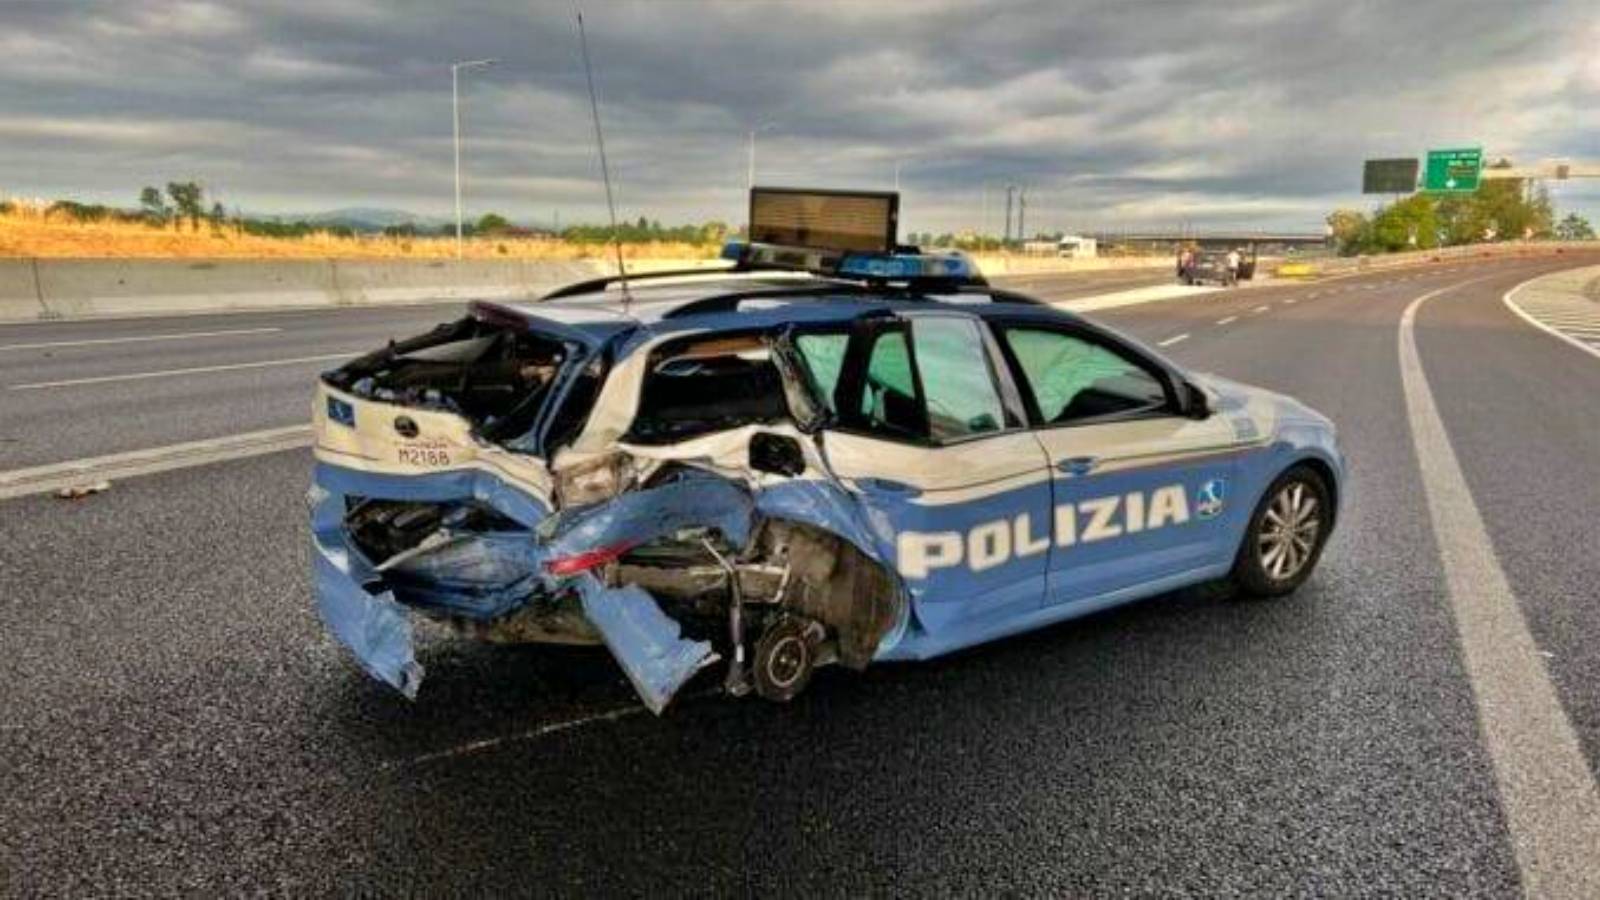 (VIDEO) Accident Grav Autostrada Masina Politie Lovita Viteza Italia